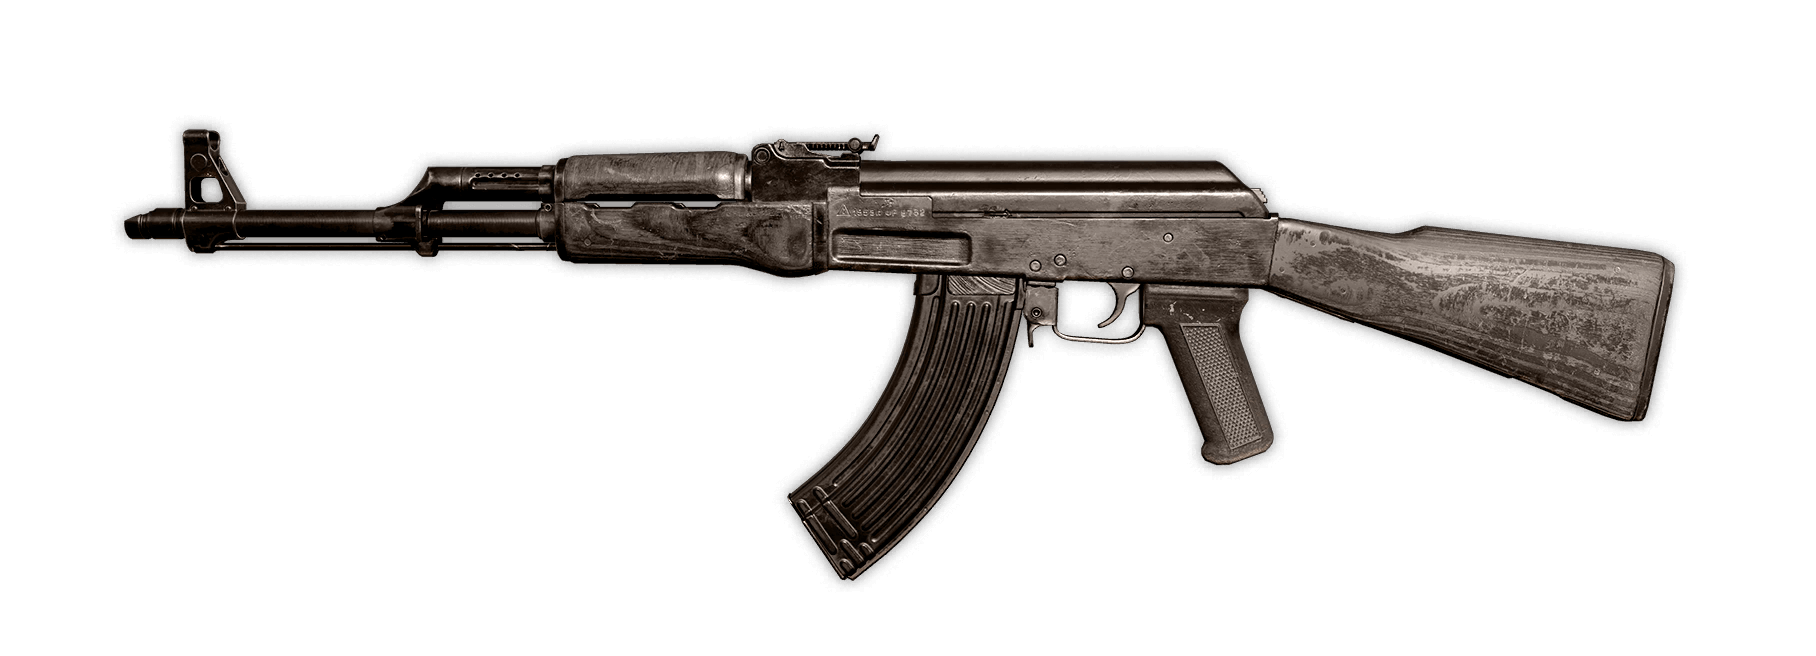 AK-47 Image